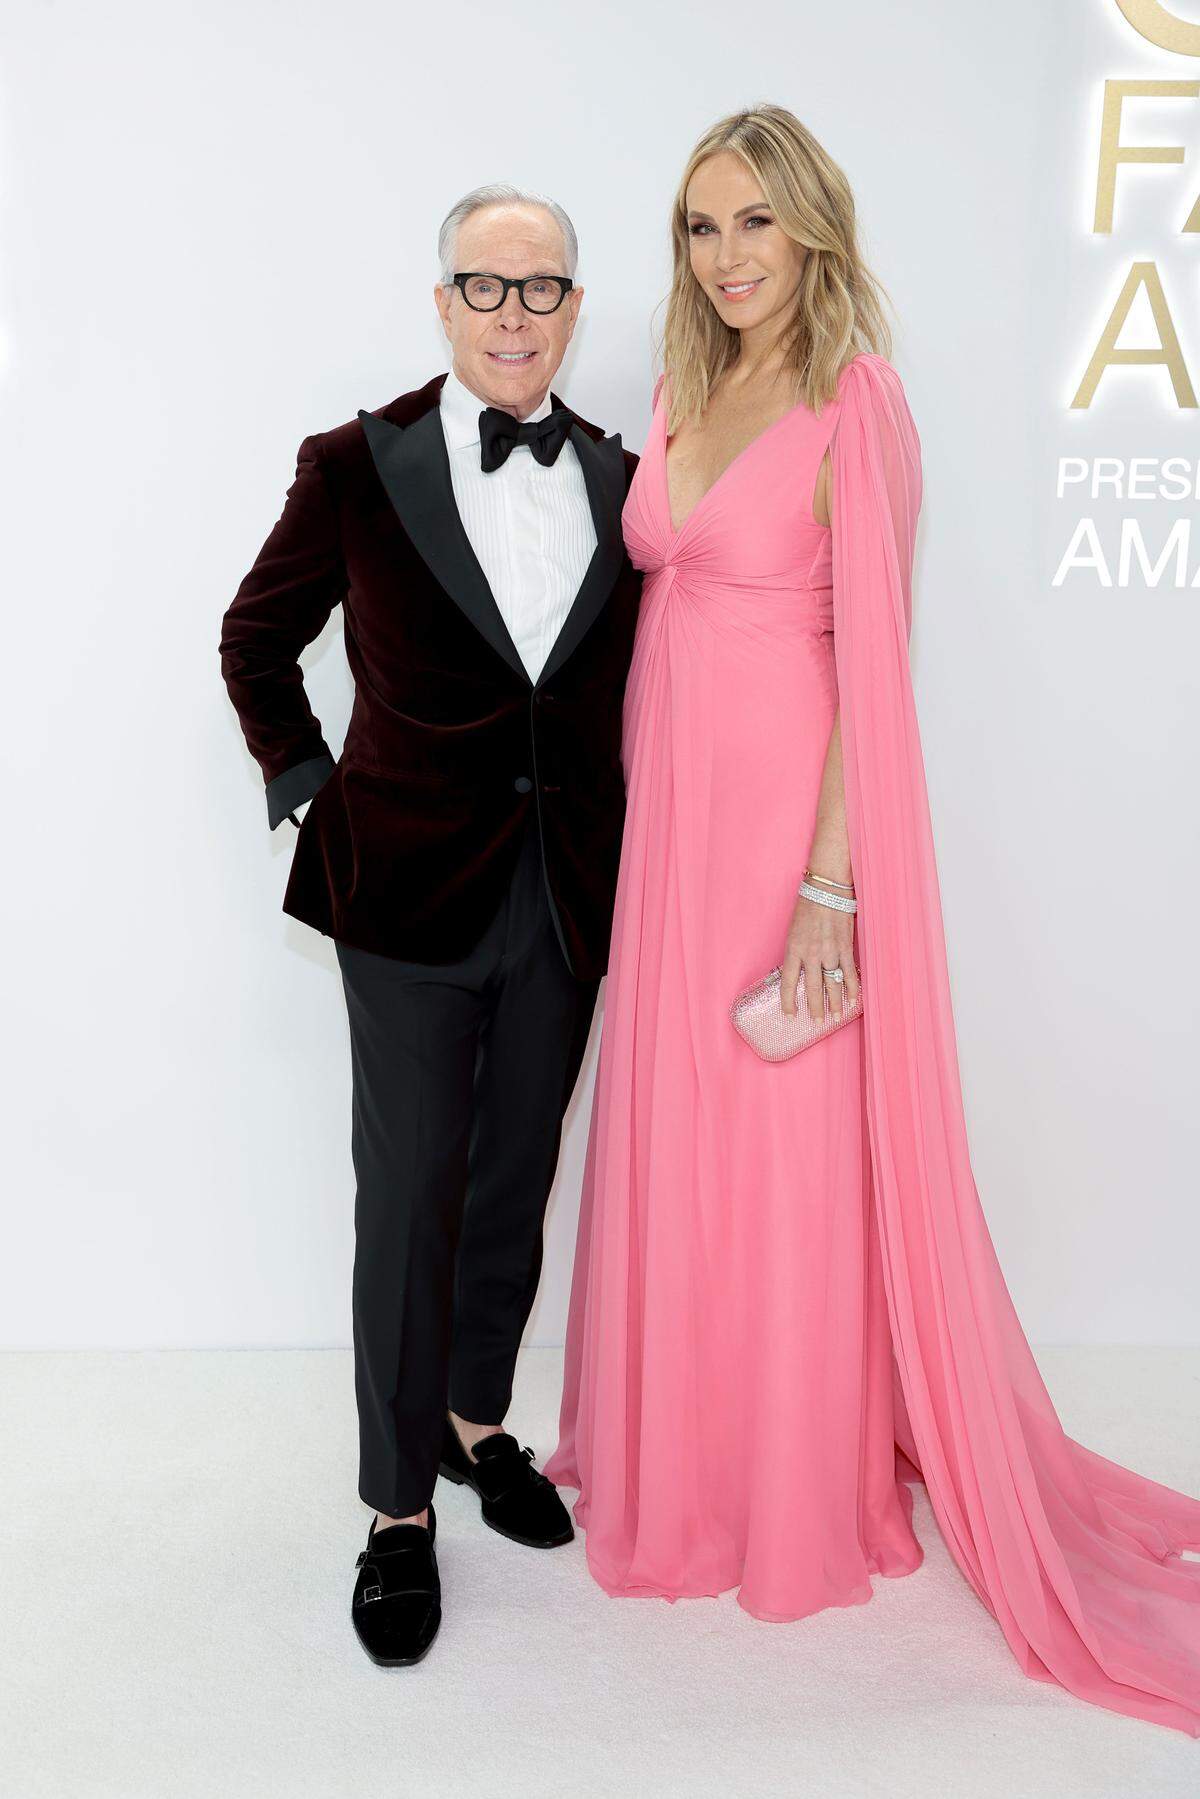 Modedesigner Tommy Hilfiger und seine Frau Dee Ocleppo Hilfiger in klassischem Smoking und Abendkleid.